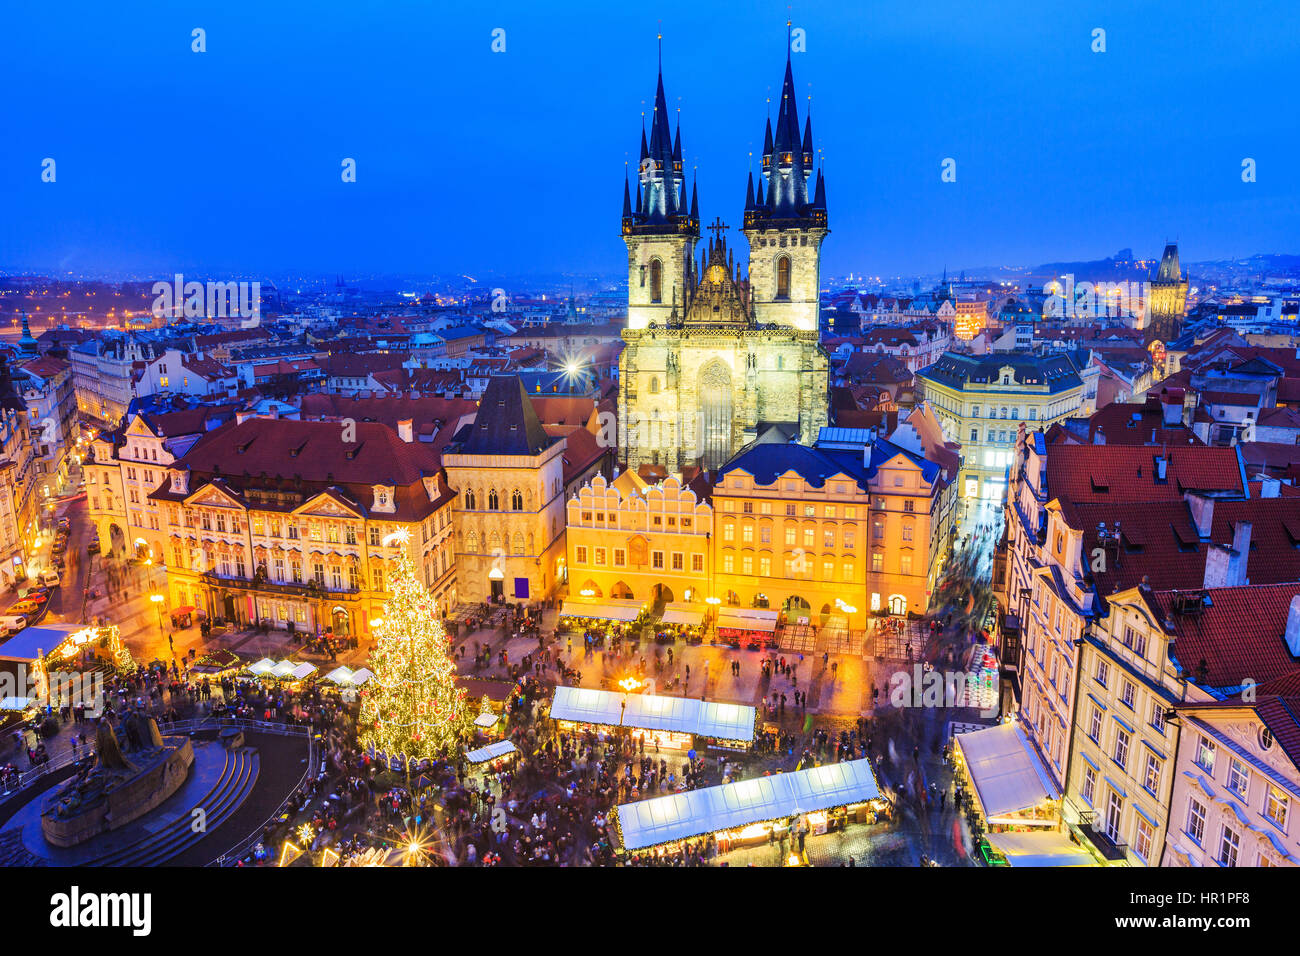 Prag, Tschechische Republic. Weihnachtsmarkt auf dem Altstädter Ring. Stockfoto